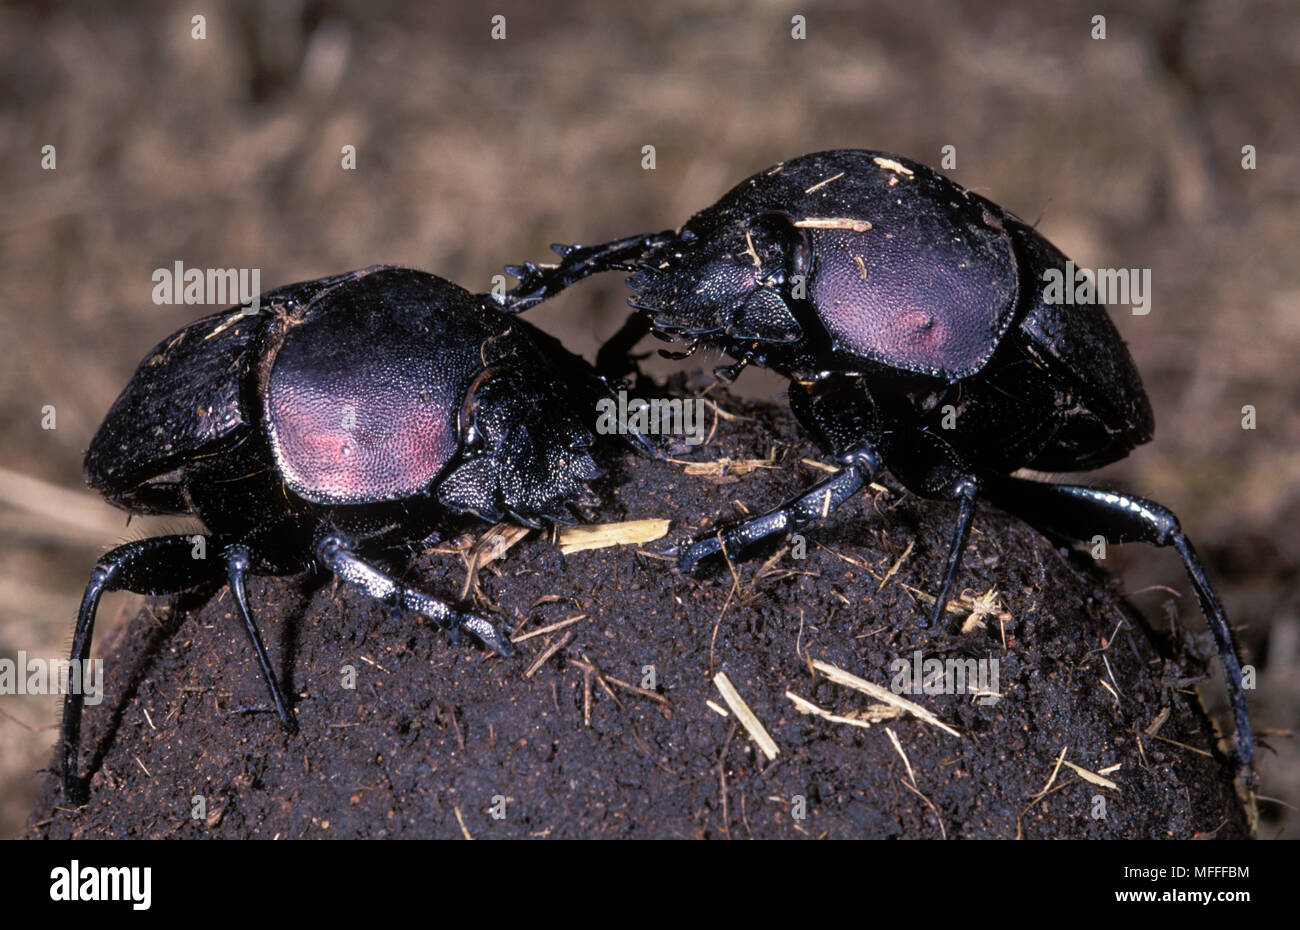 DUNG BEETLES ON DUNGBALL Family: Scarabaeidae Stock Photo